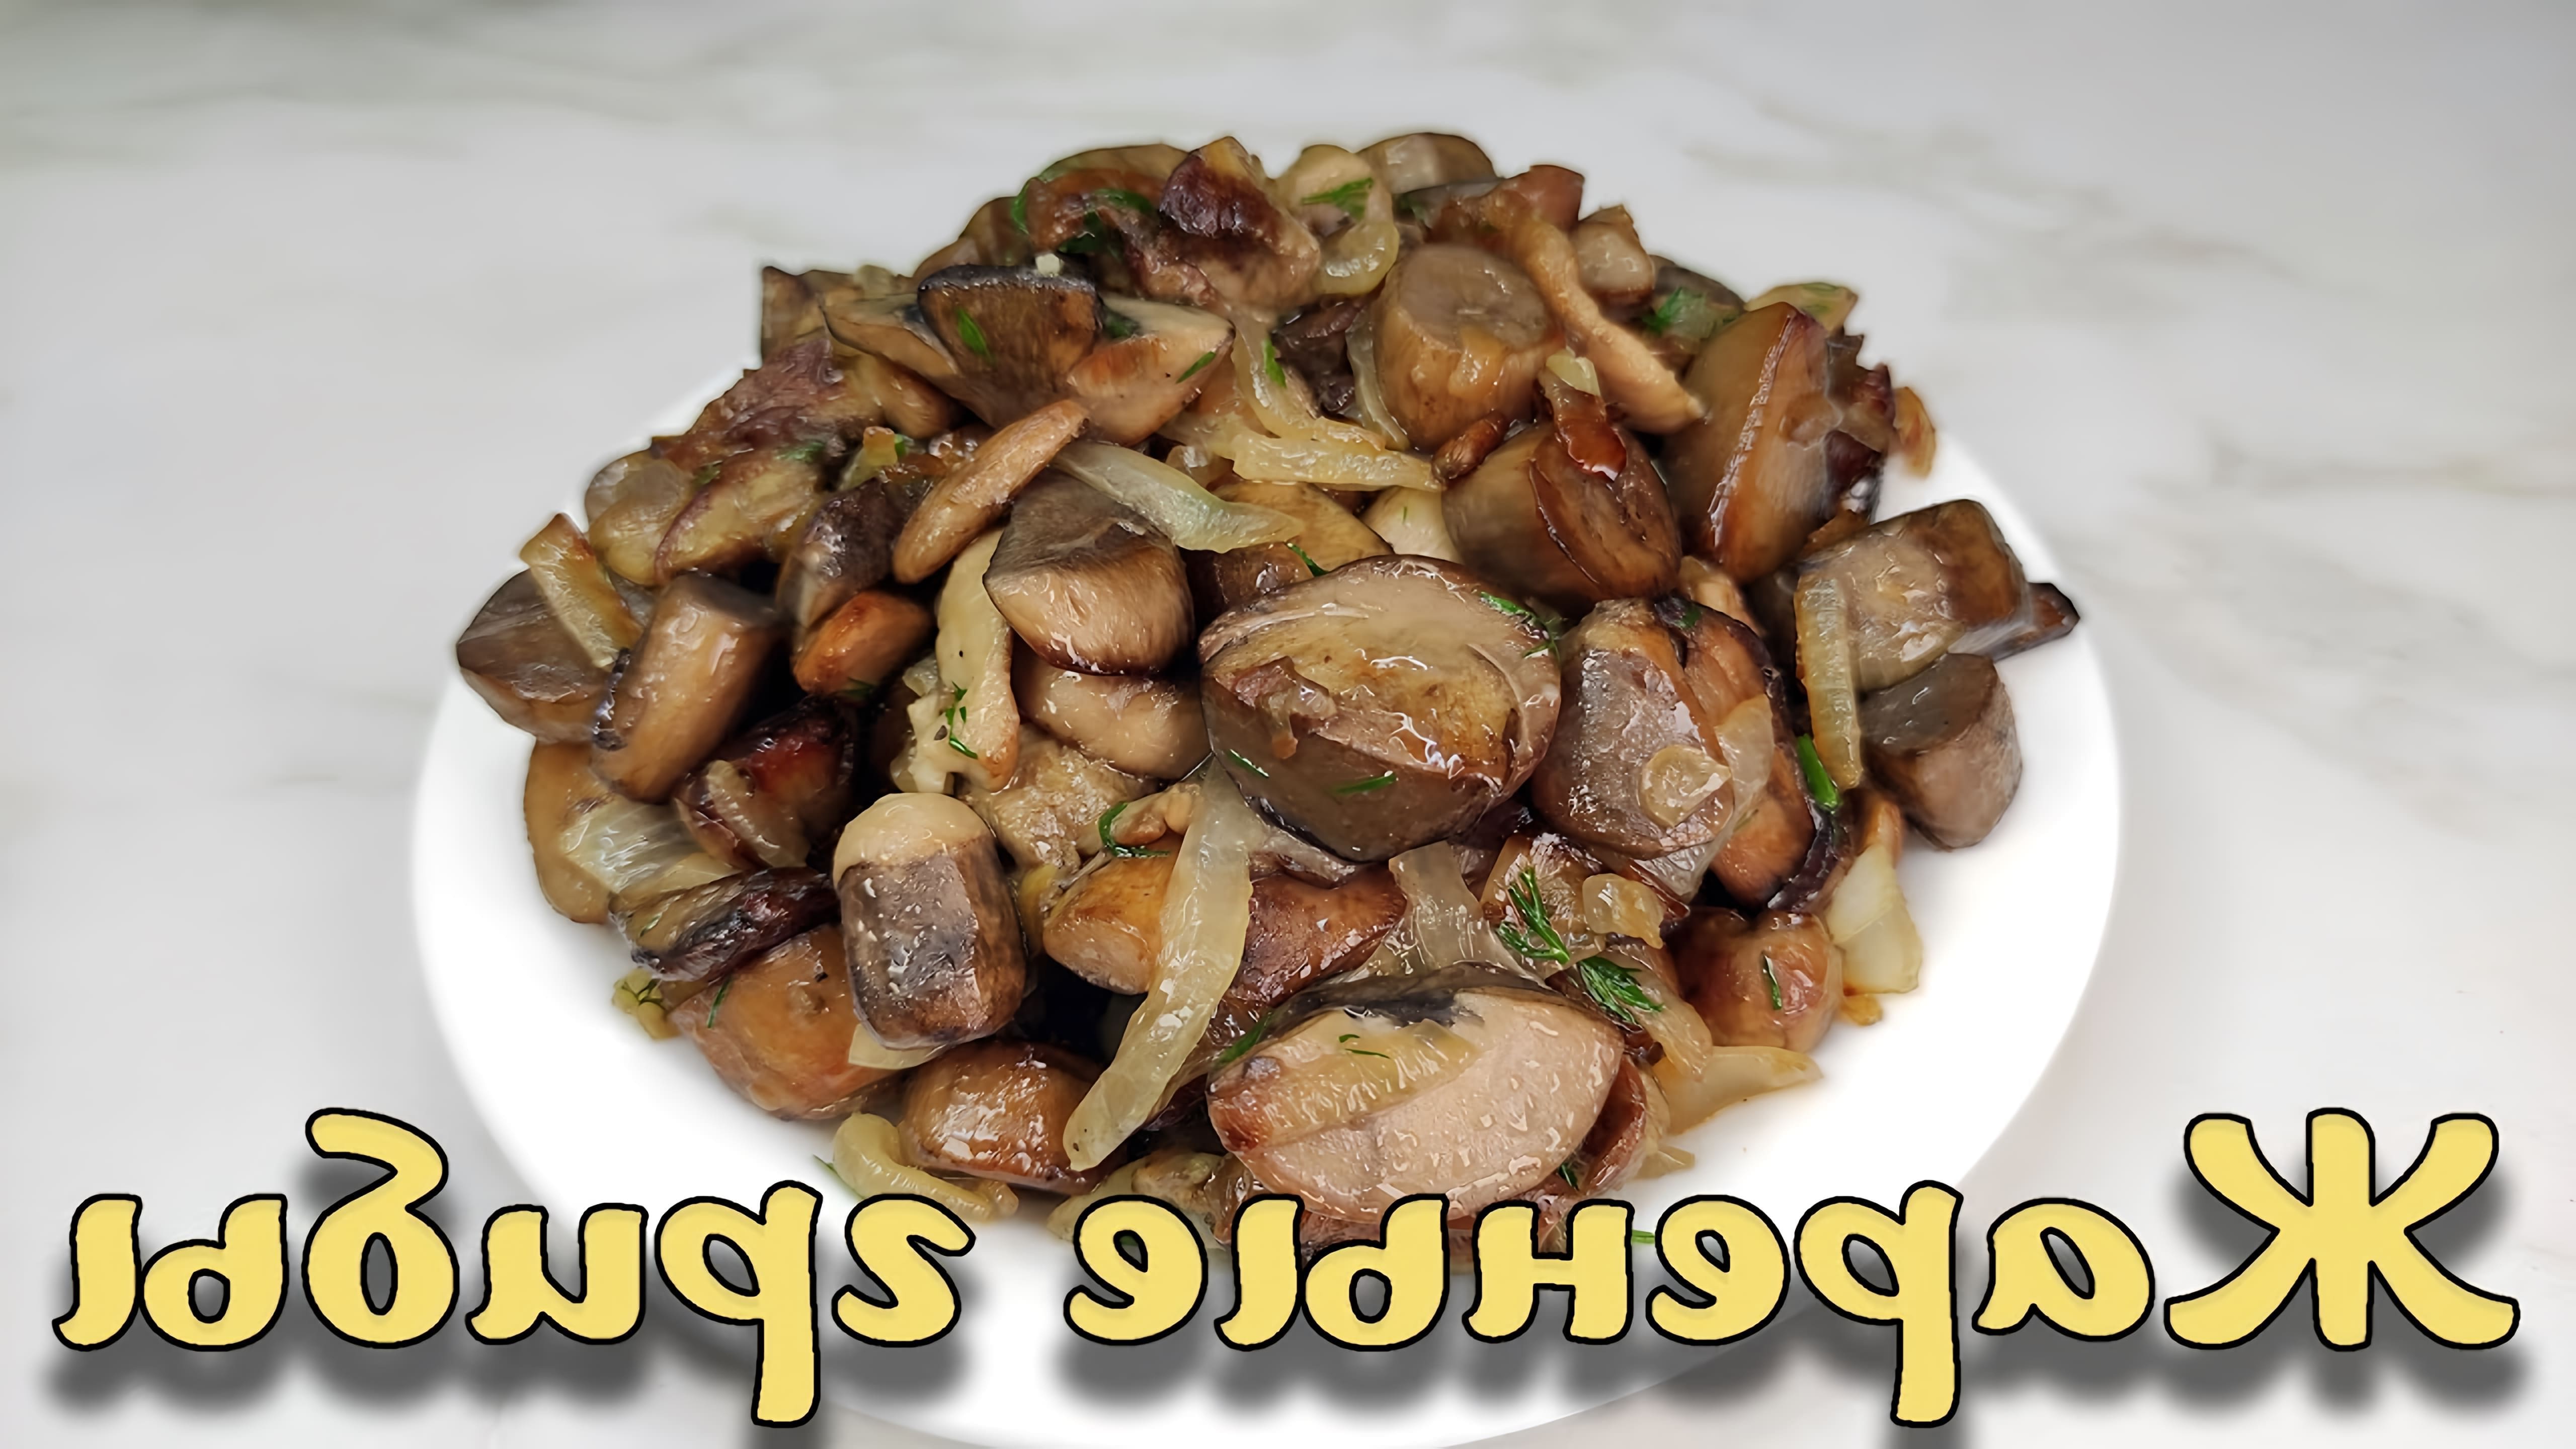 Жареные грибы - это простое и вкусное блюдо, которое можно приготовить в домашних условиях